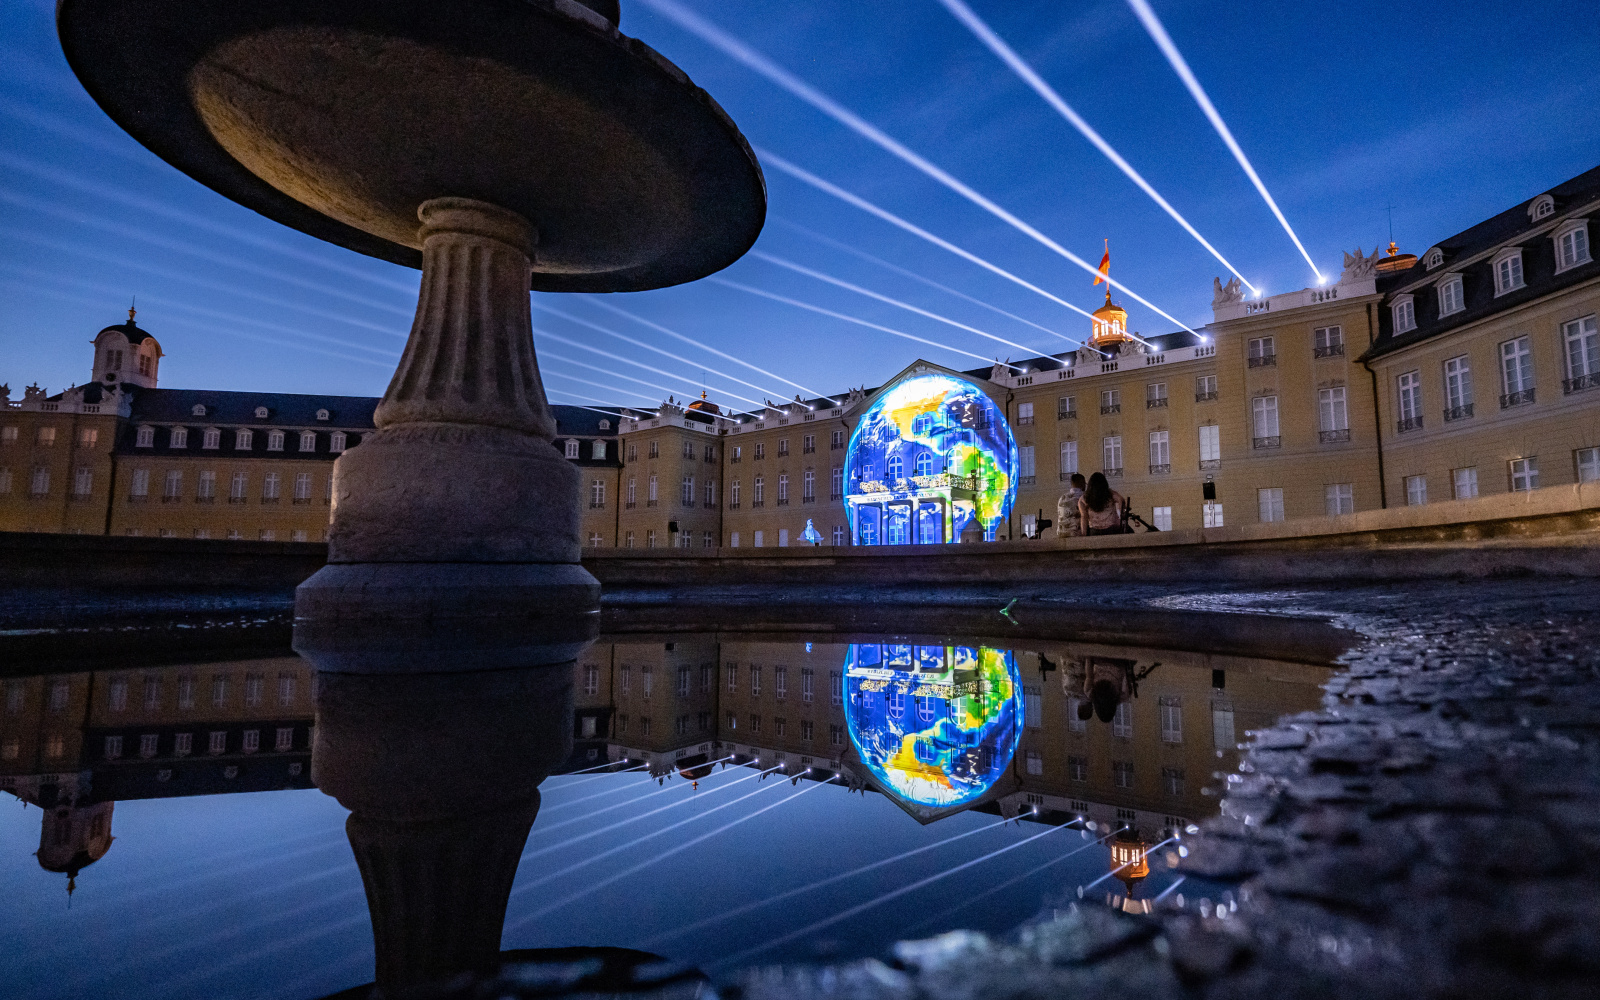 Zu sehen ist die beleuchtete Fassade des Karlsruher Barockschlosses, in deren Mitte sich eine Weltkugel befindet.